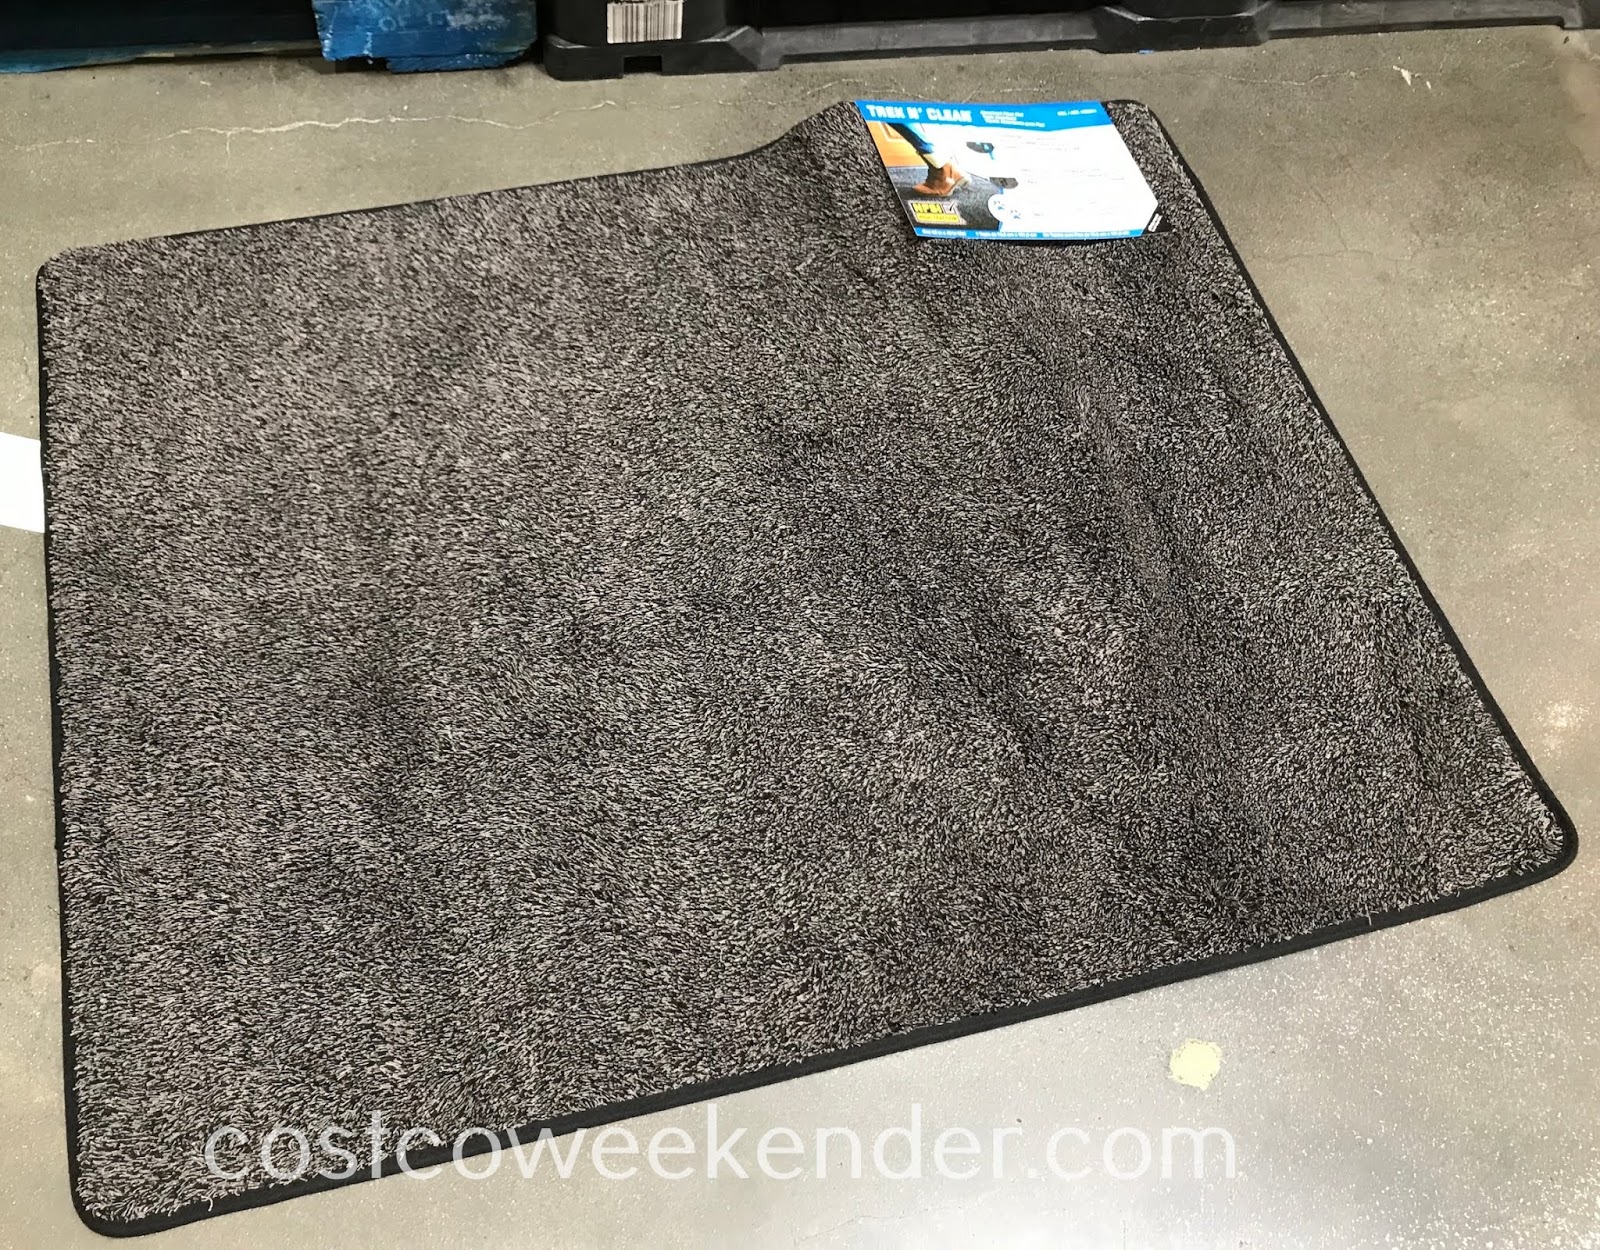 Trek N Clean Absorbent Floor Mat Costco Weekender